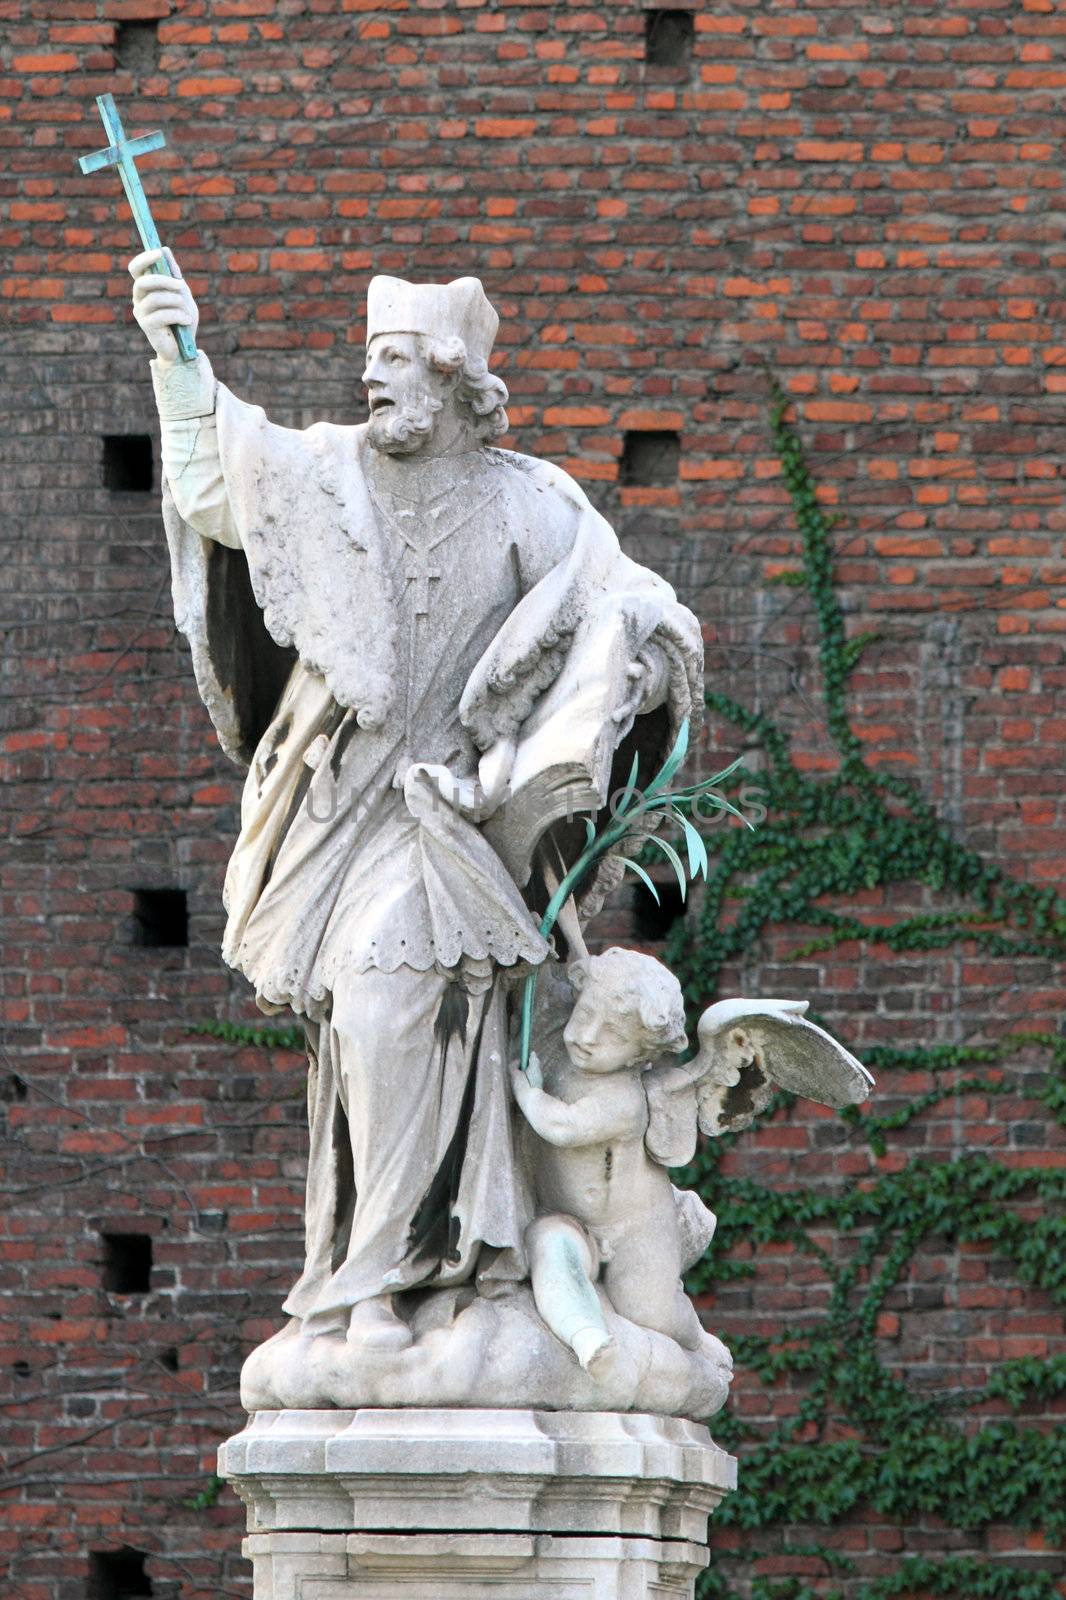 Statue near the Sforzesco Castle in Milan